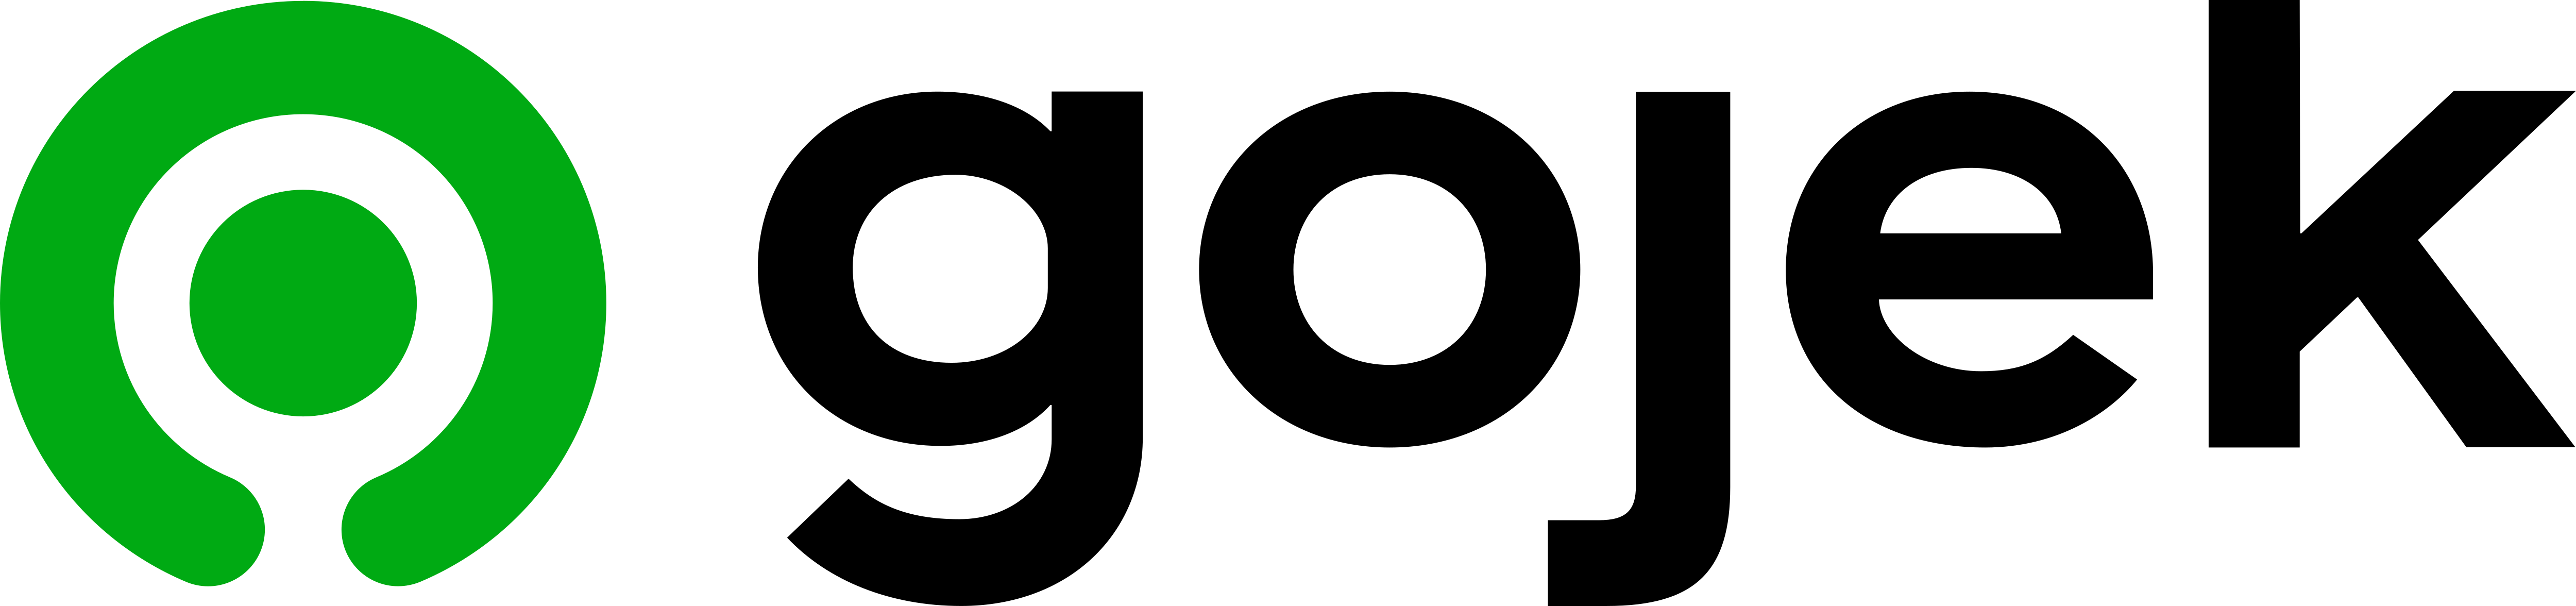  Gojek  Logos  Download